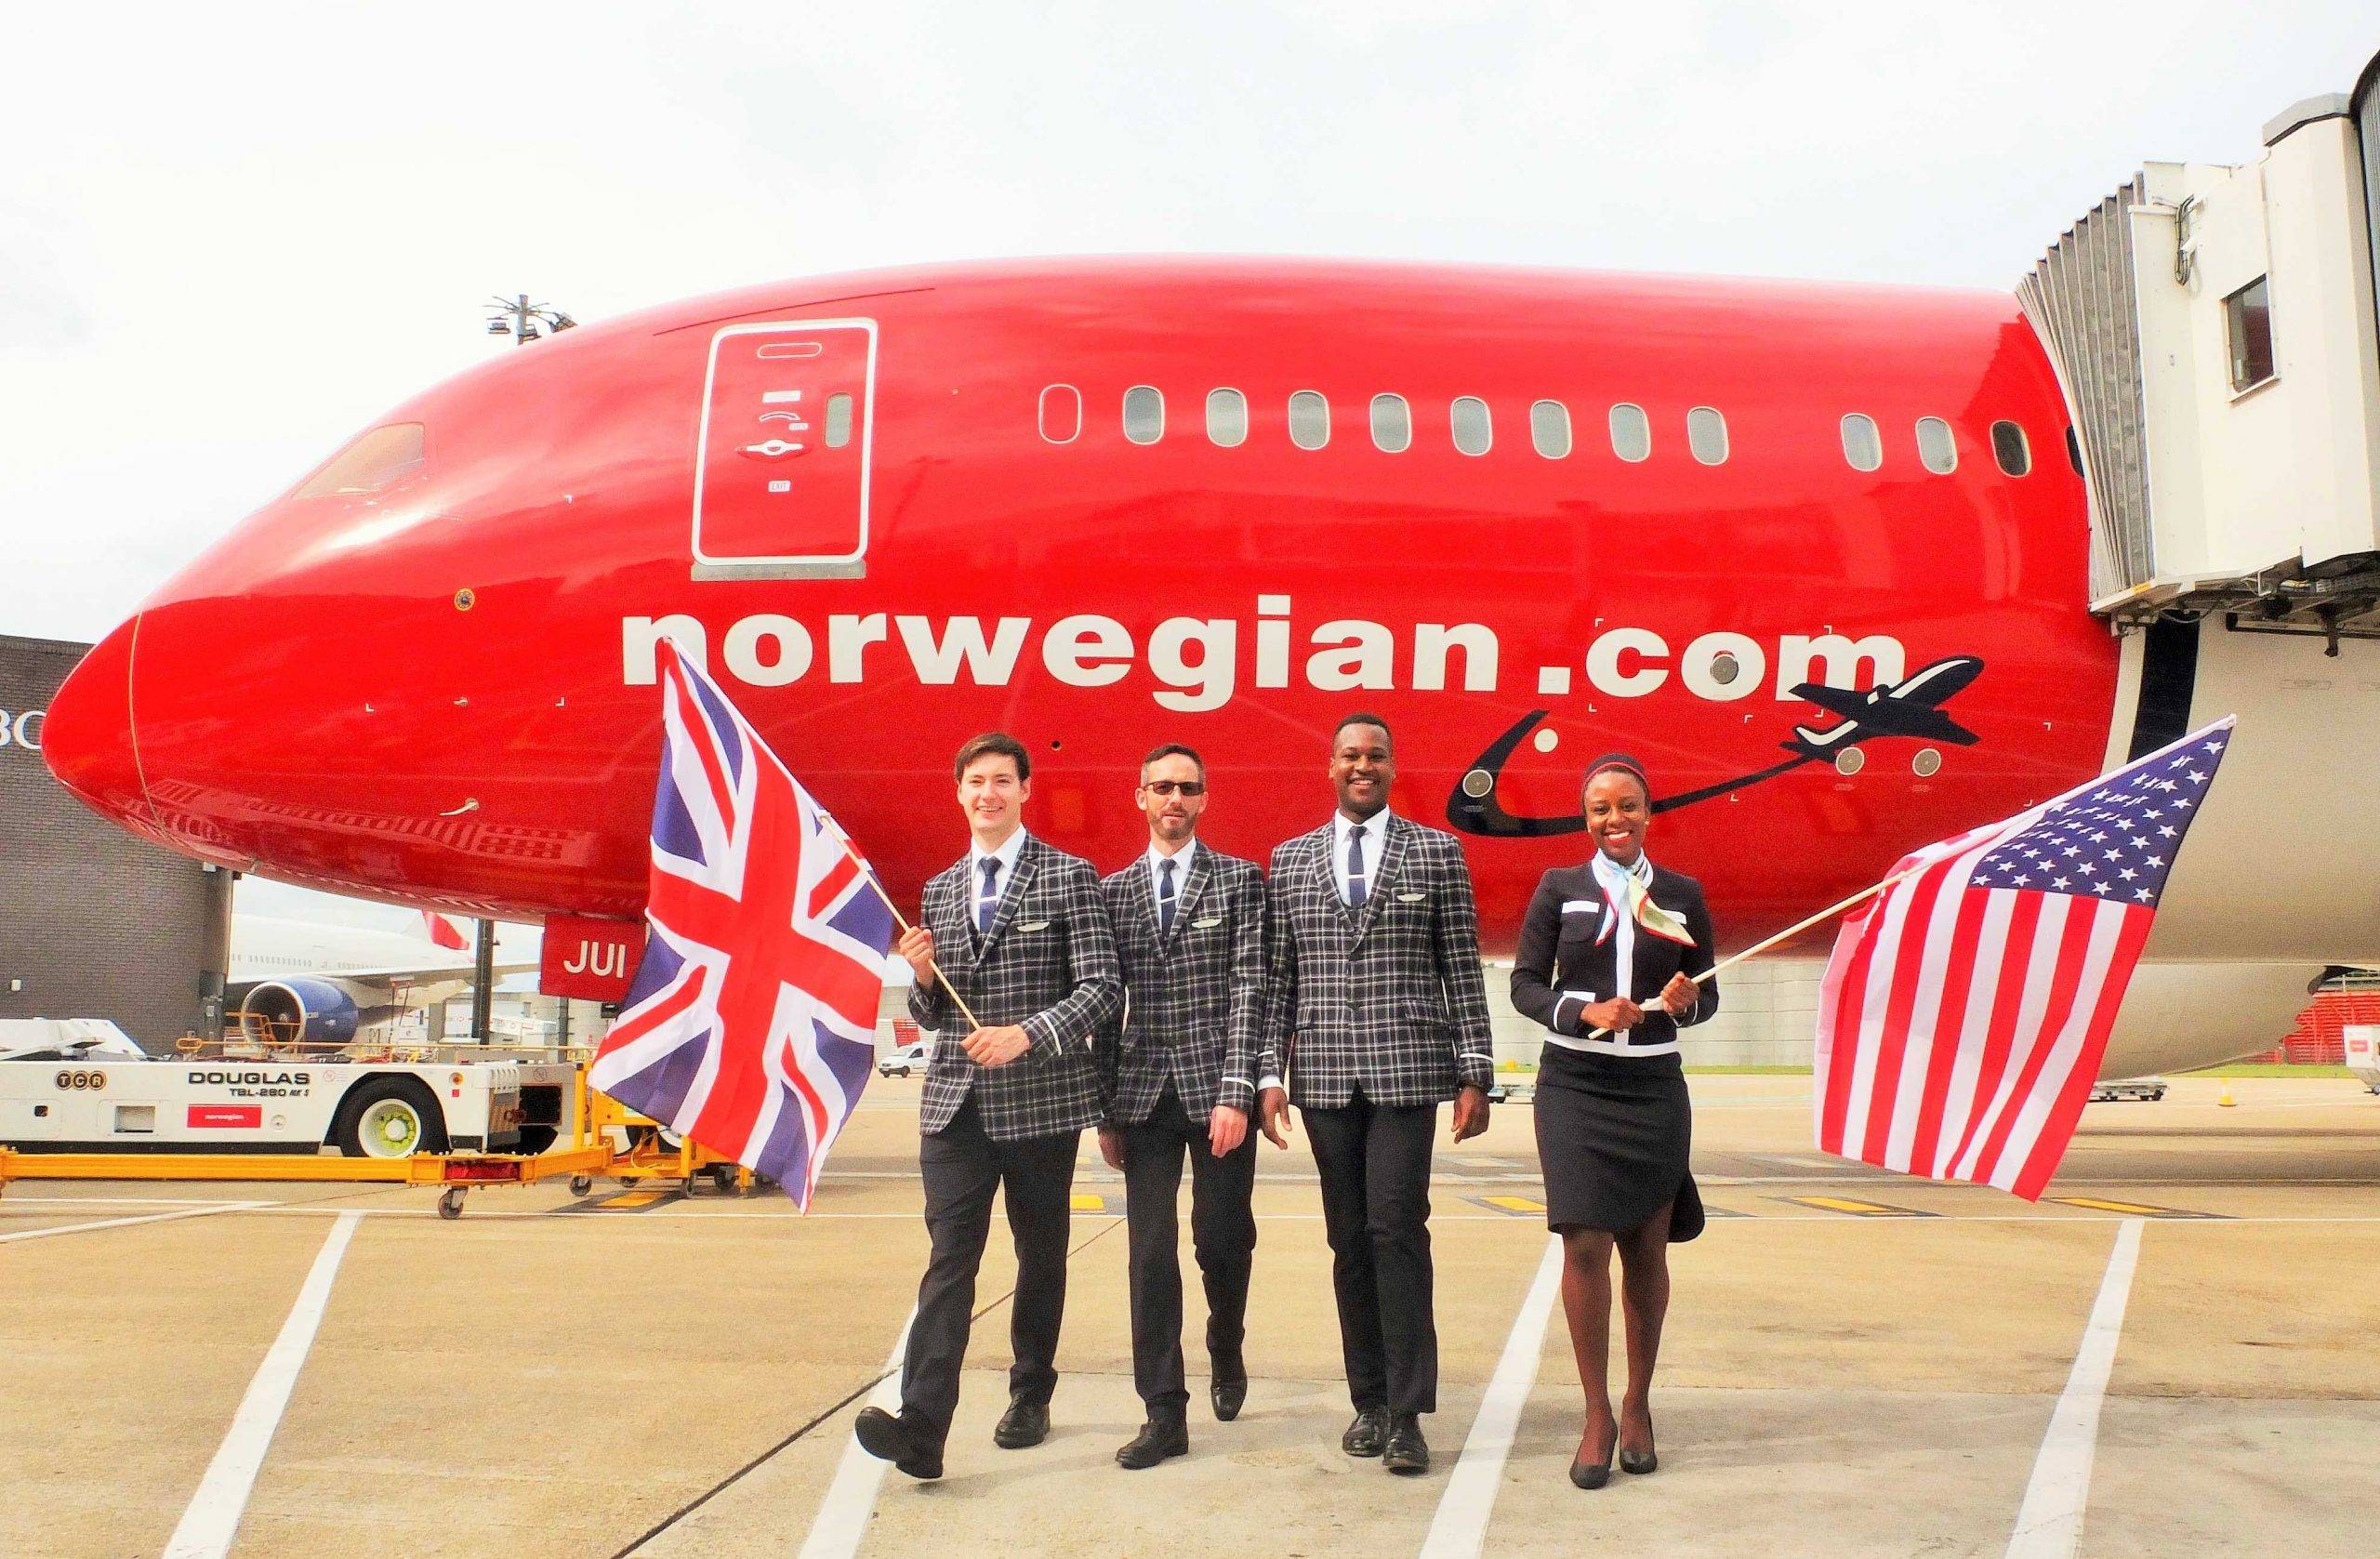 Компания norwegian air shuttle – европейский лидер экономных авиаперевозок